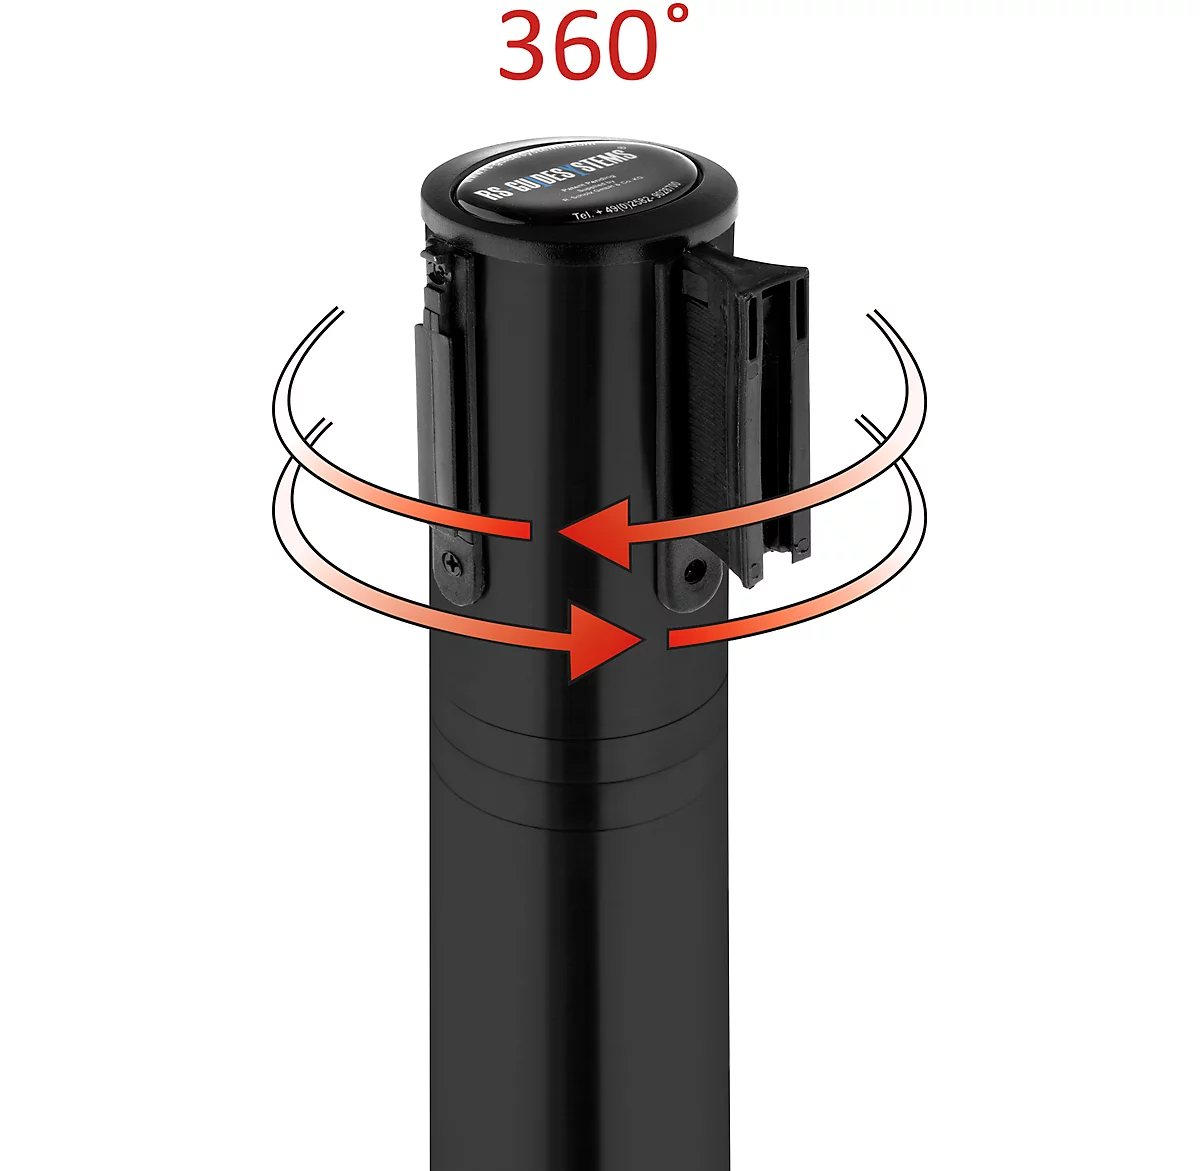 Absperrpfosten, Kopf um 360° drehbar, Gurt bis 2,3 m ausziehbar, Gurtkassette & Bremse, L 1000 mm, Metall, Gurt schwarz-rot